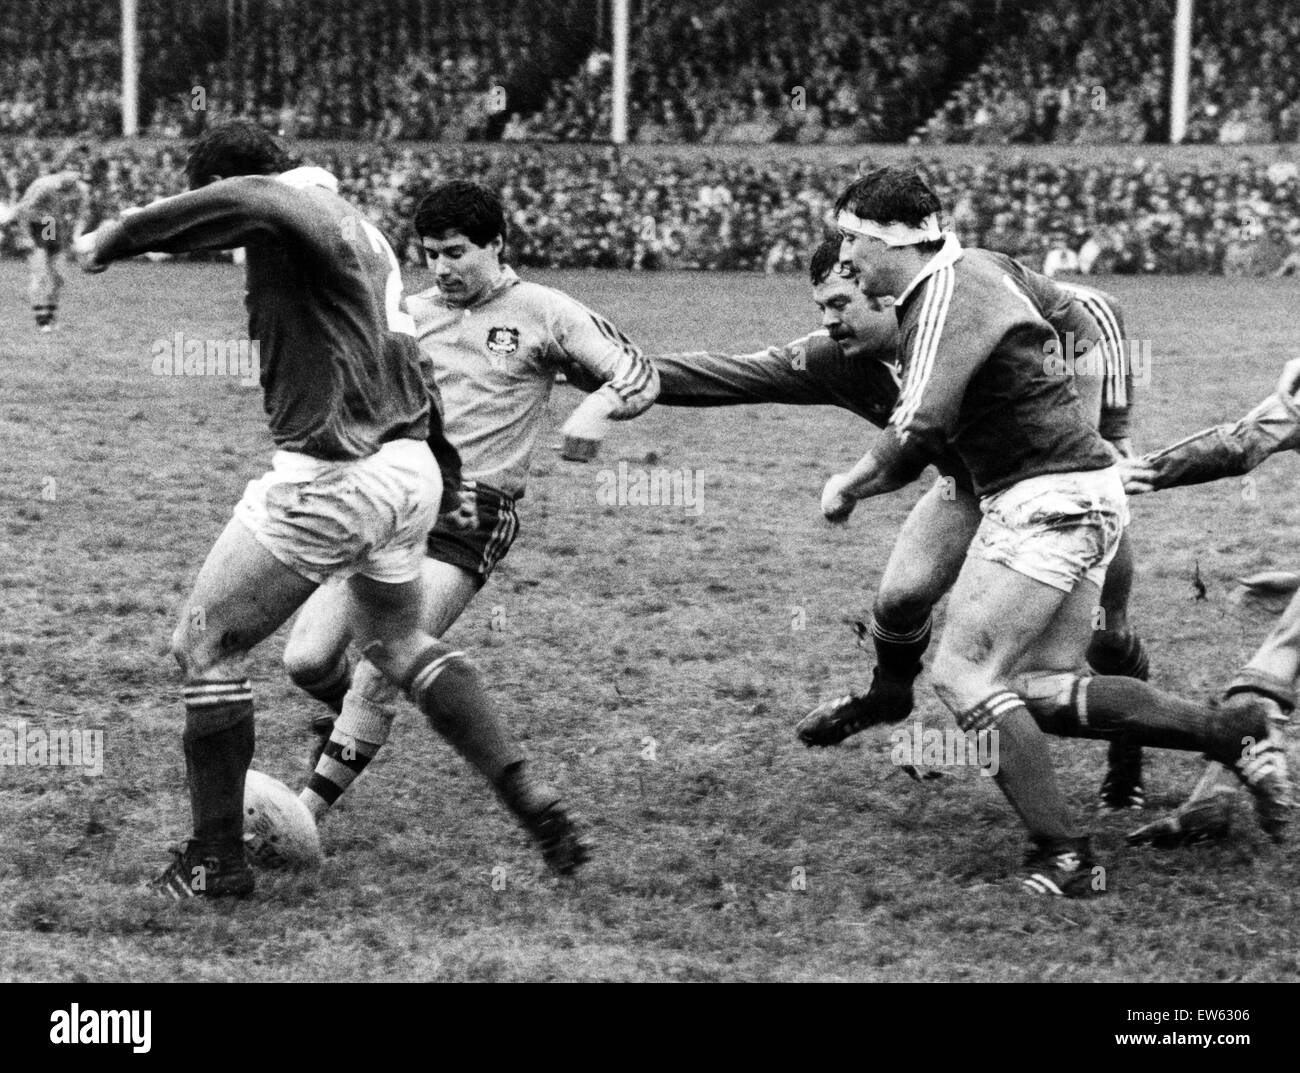 Llanelli V Australia Rugby match, während der Australien-Tour von Großbritannien und Irland. Llanelli gewonnen: Llanelli 19, Australien 16. Llanelli Hooker Kerry Townley, Kugel an seinen Füßen fährt in Richtung der Aussies. 20. November 1984. Stockfoto